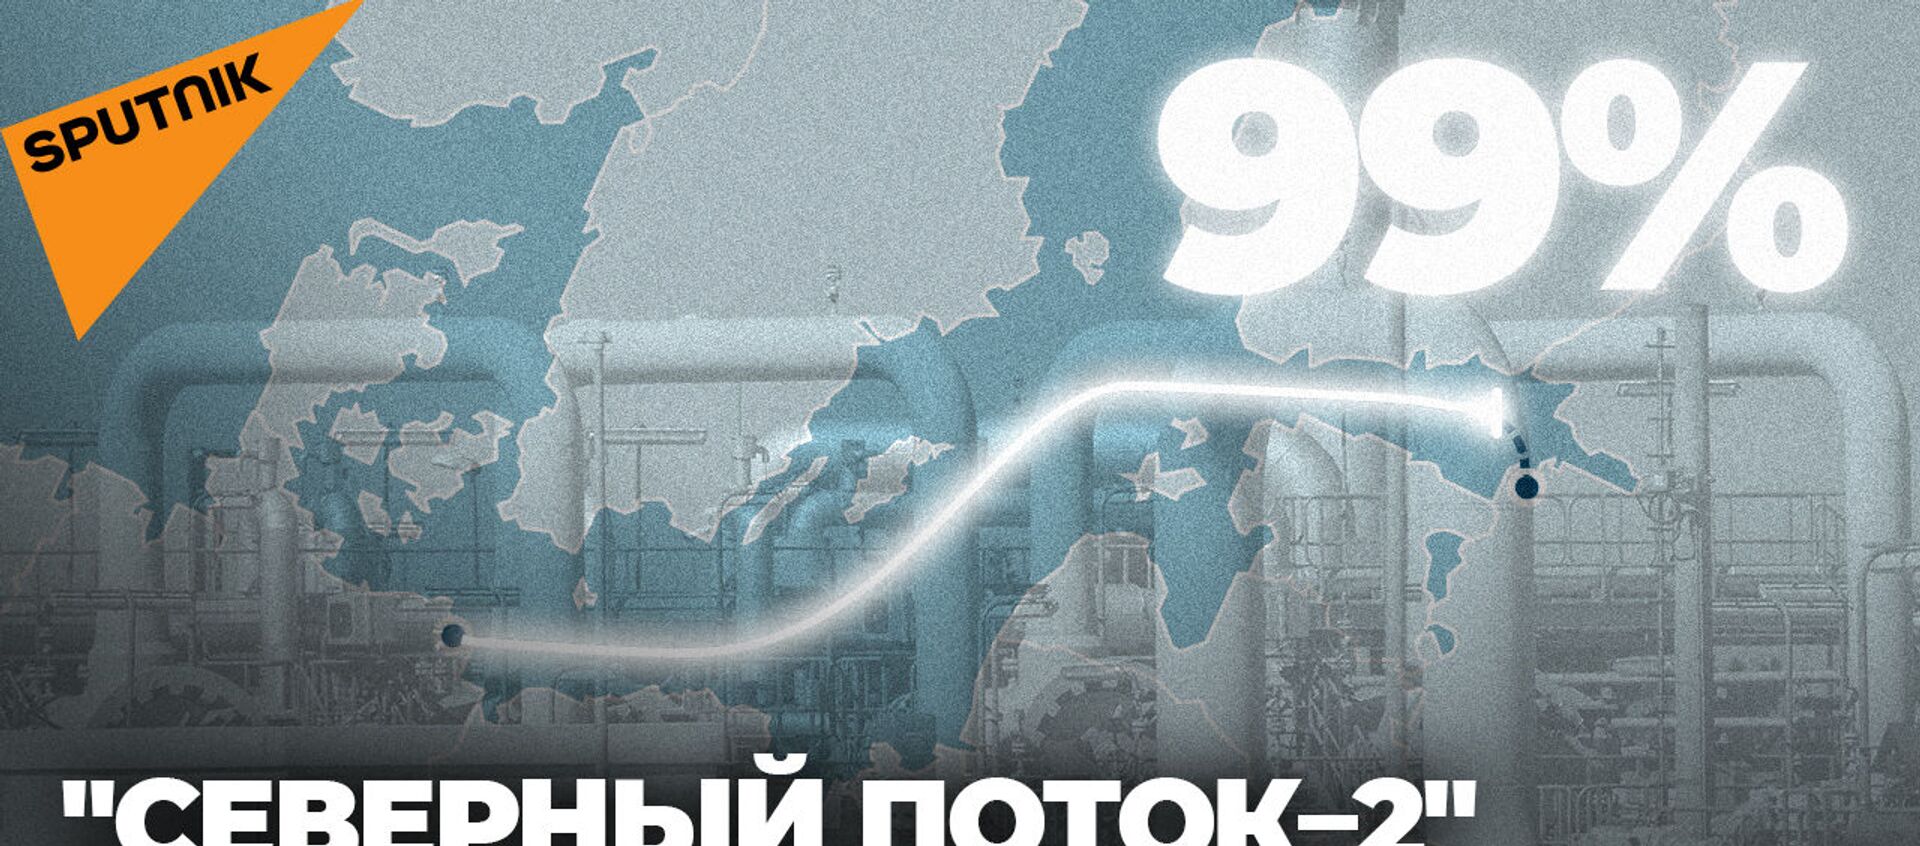 Северный поток - 2 почти готов: построено 99% газопровода - Sputnik Абхазия, 1920, 30.07.2021